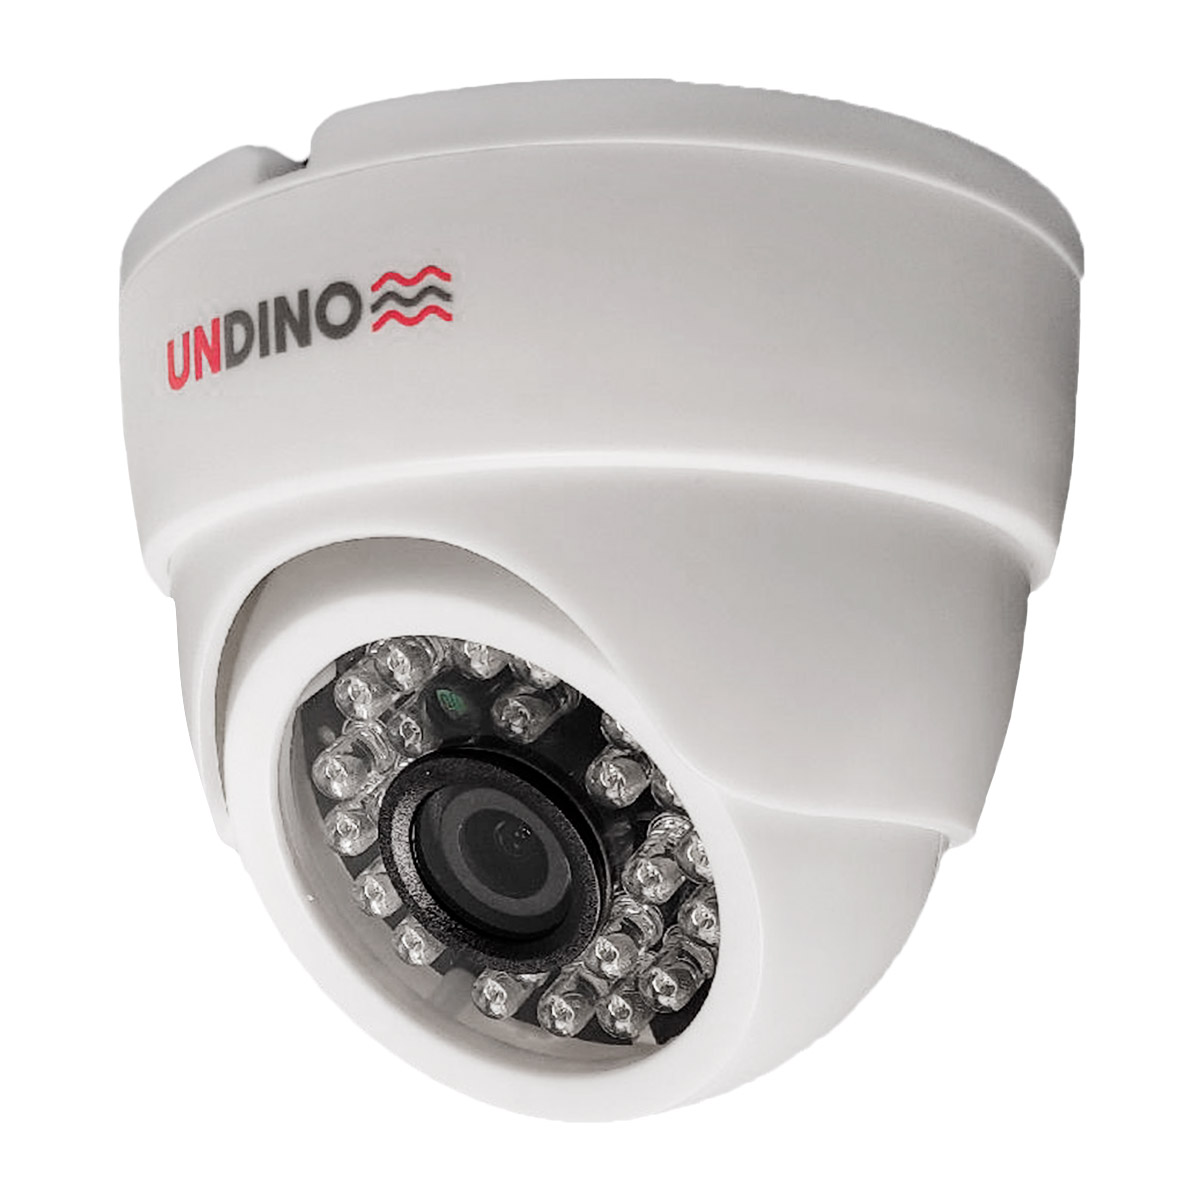 Купольная камера видеонаблюдения IP 5Мп Undino UD-ED05IP цифровая с POE питанием